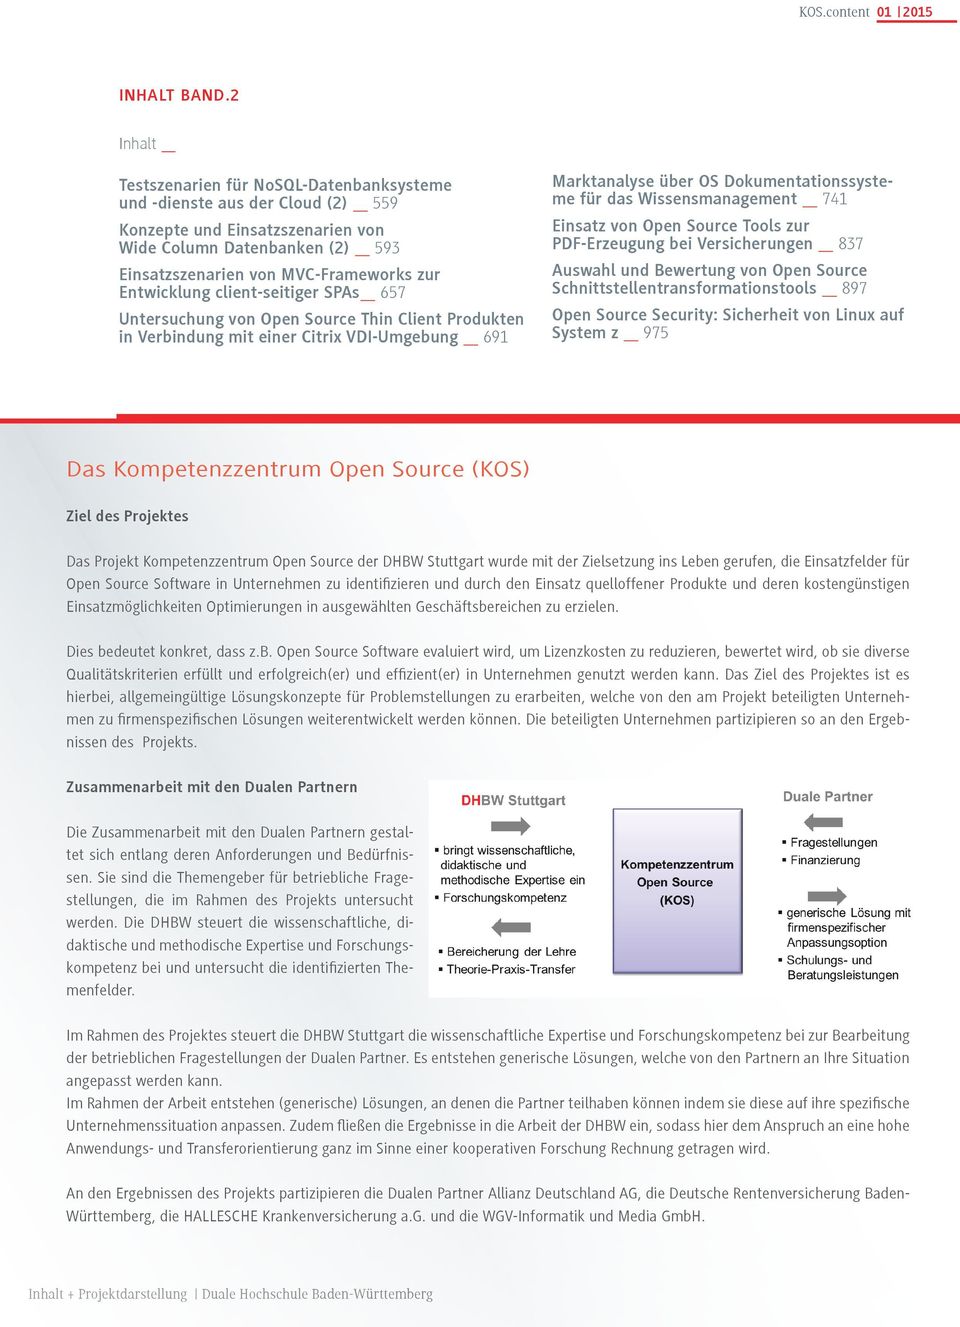 Entwicklung client-seitiger SPAs 657 Untersuchung von Open Source Thin Client Produkten in Verbindung mit einer Citrix VDI-Umgebung 691 Marktanalyse über OS Dokumentationssysteme für das